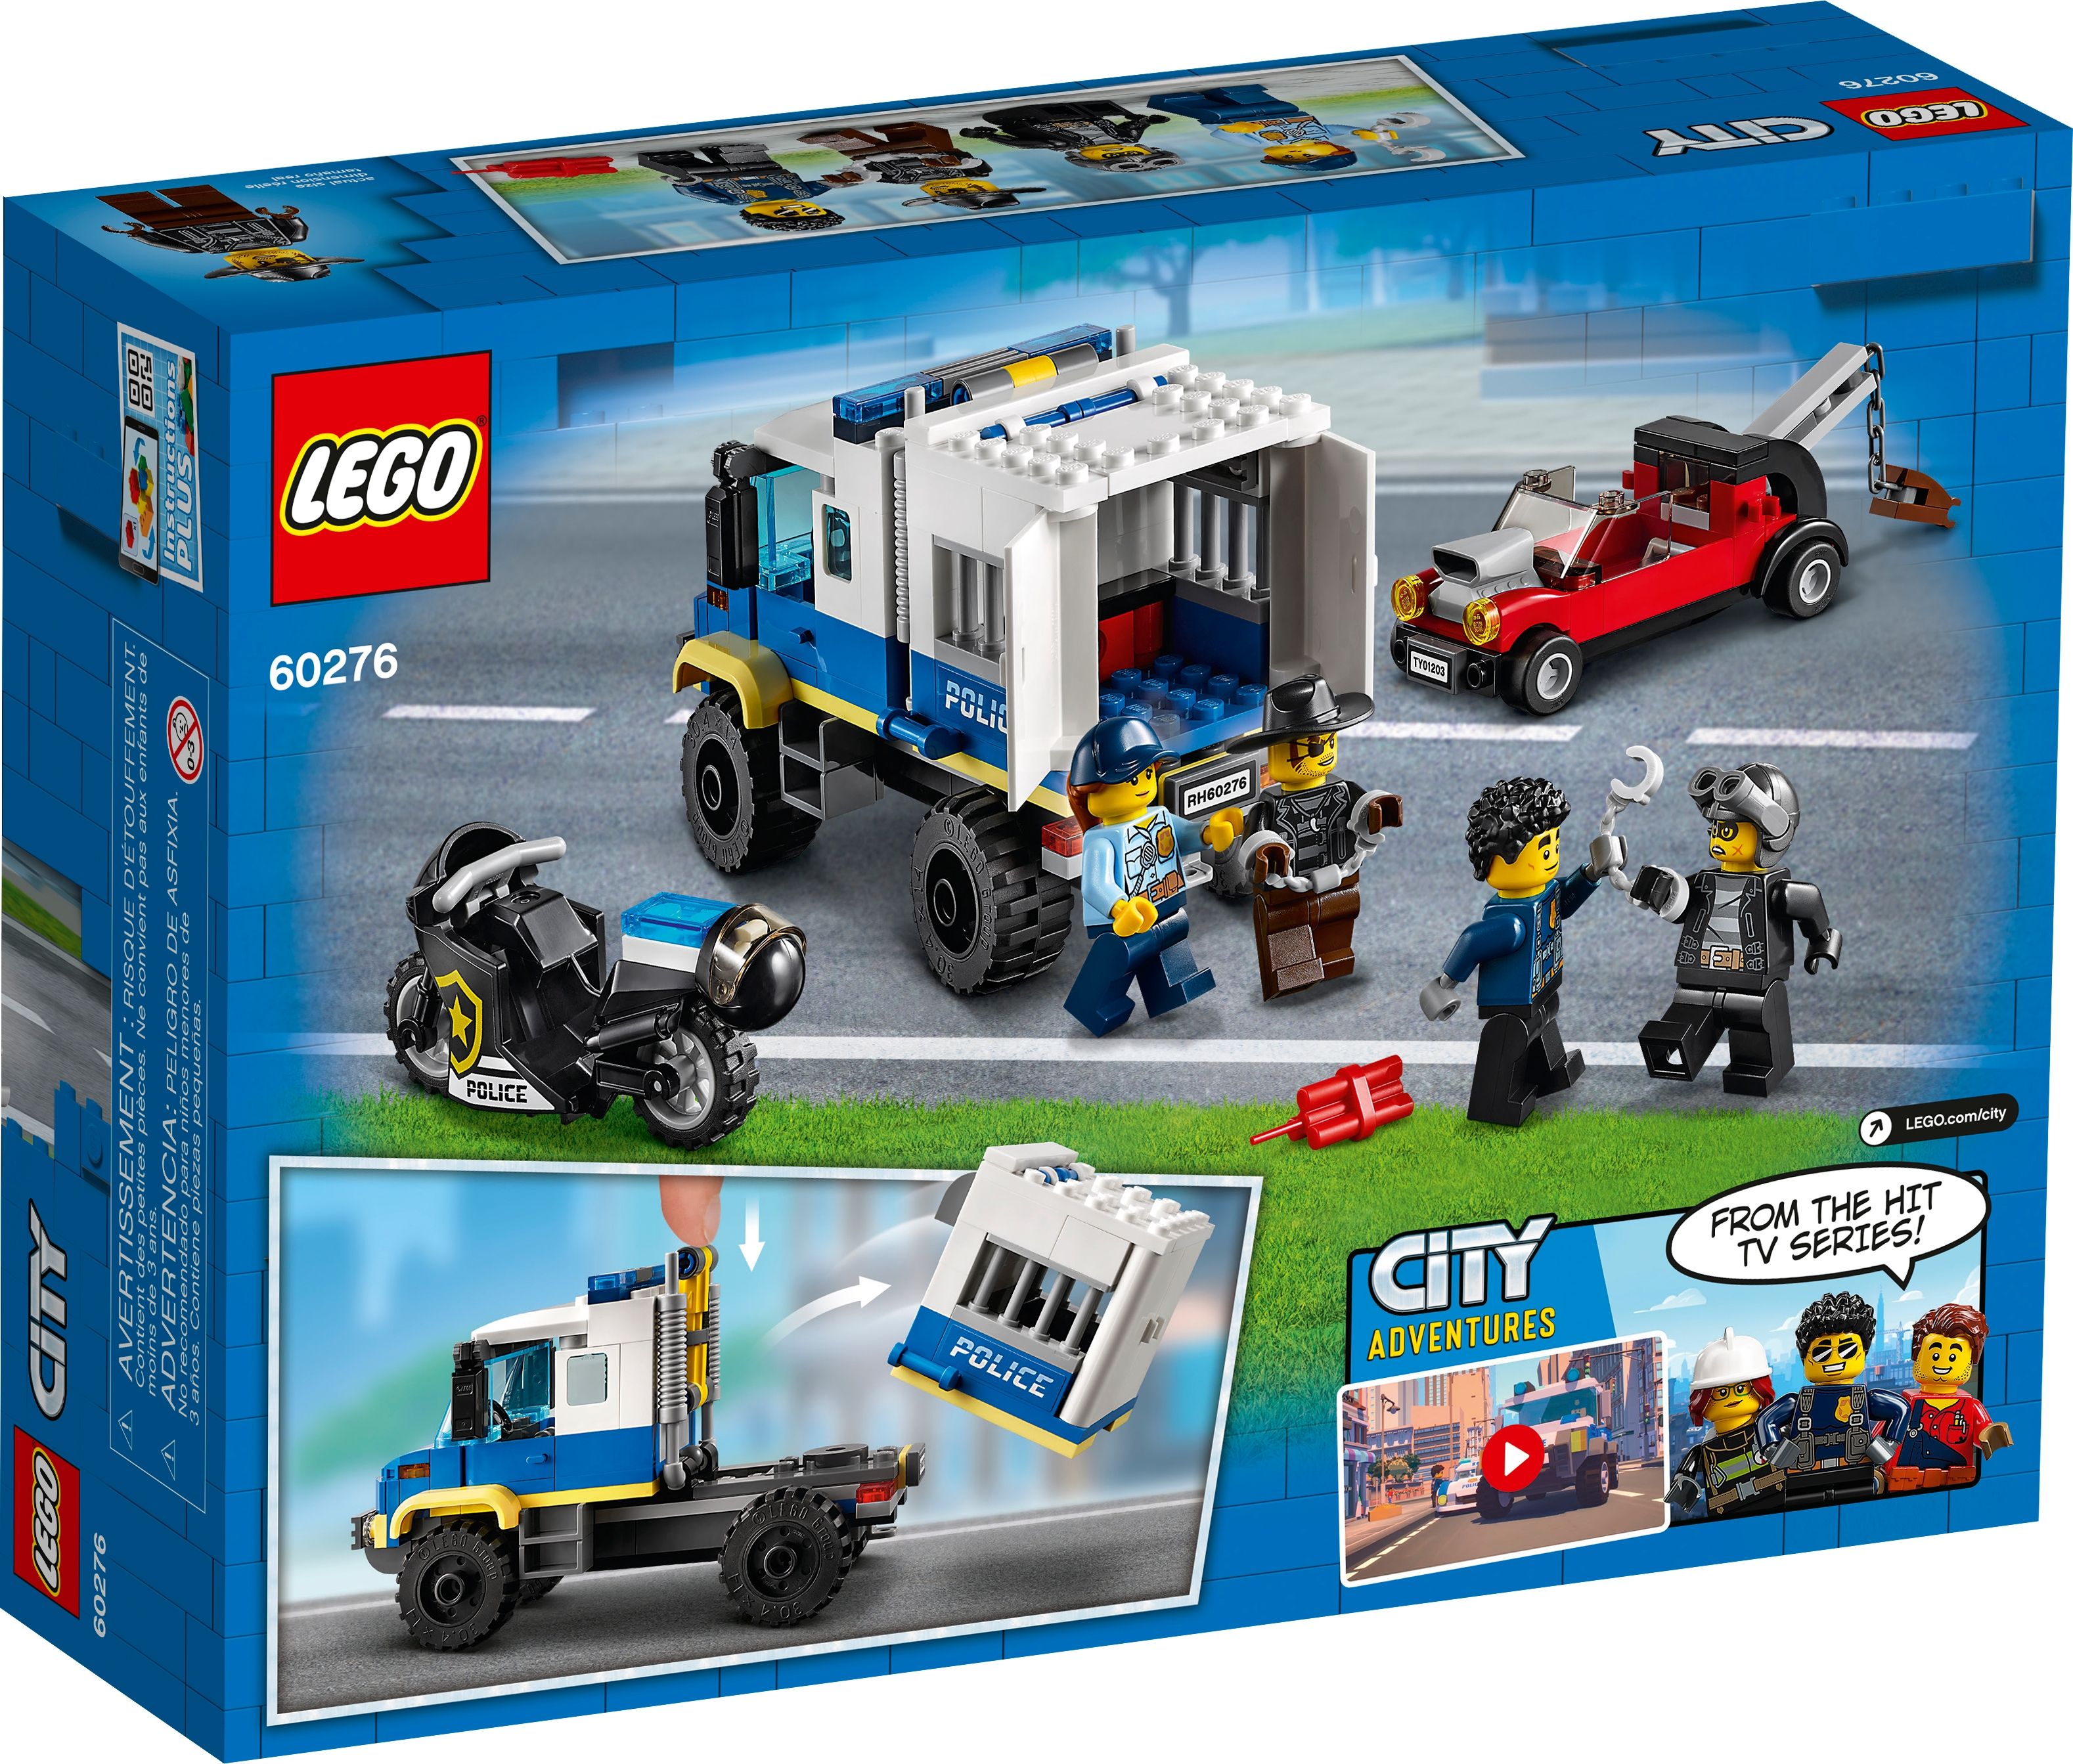 LEGO City 60276 Polizei Gefangenentransporter LEGO_60276_box5_v39.jpg